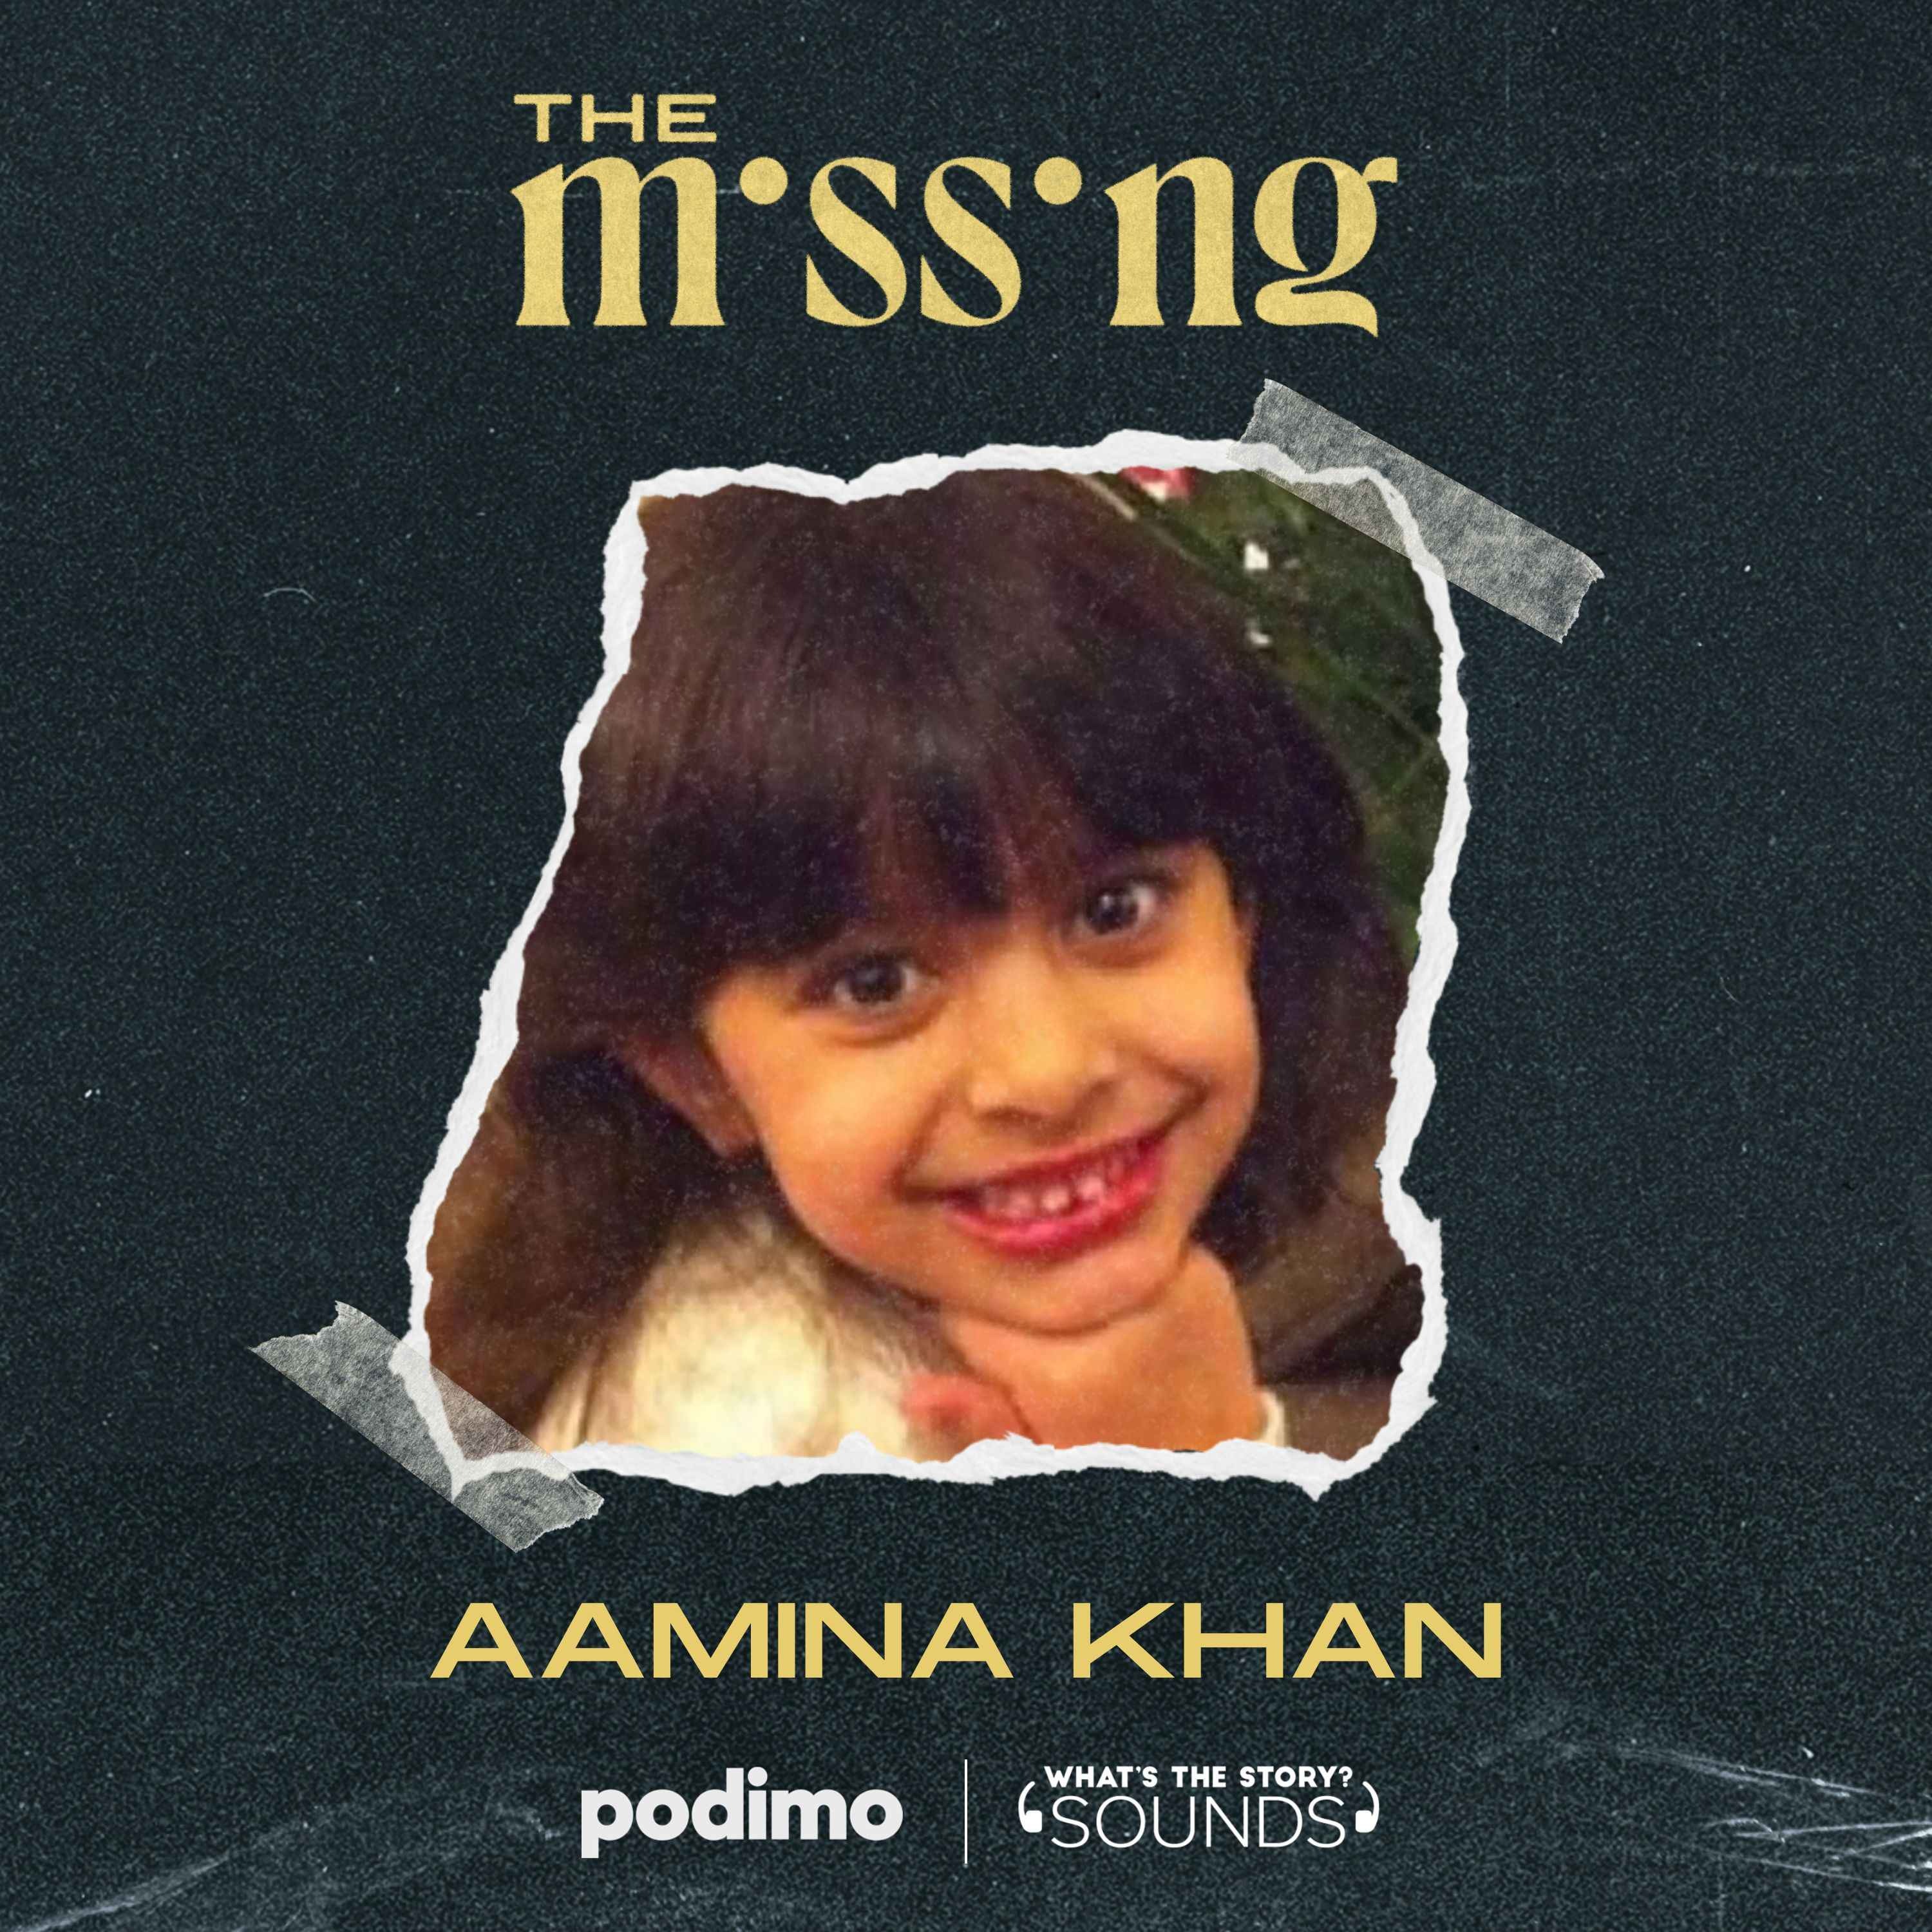 Aamina Khan